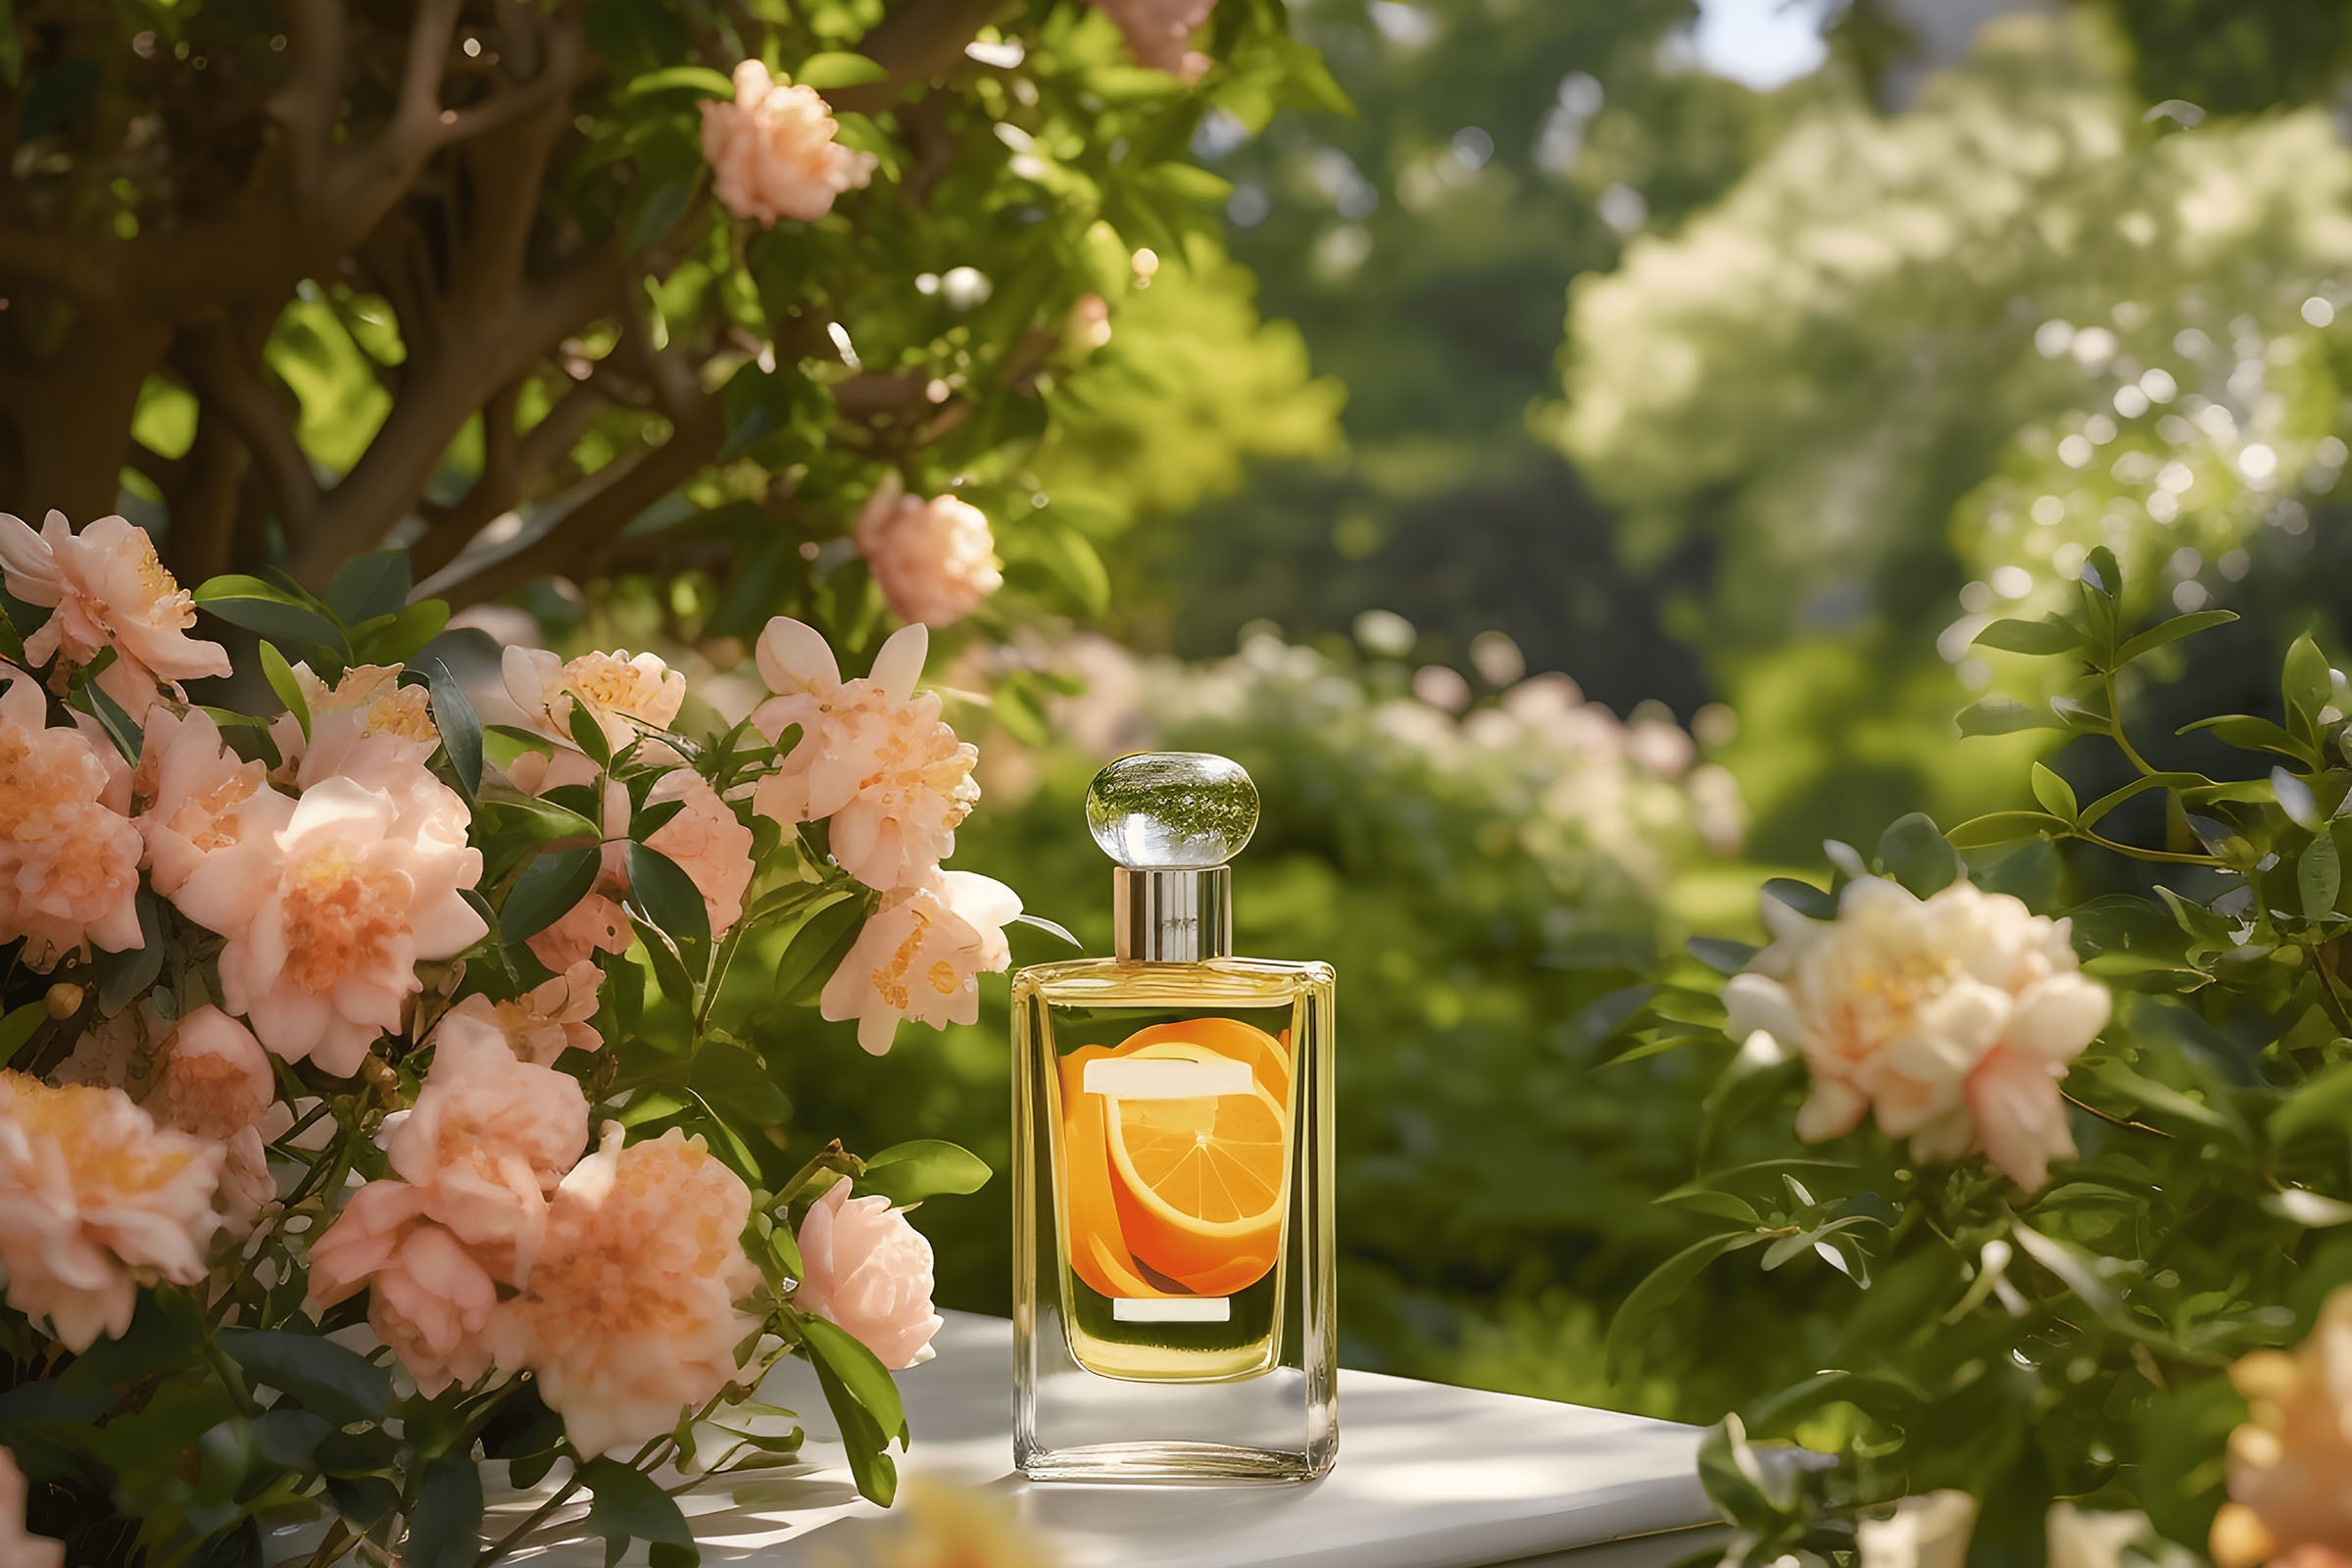 Honeysuckle Rose Fragrance Oil – Wellington Fragrance